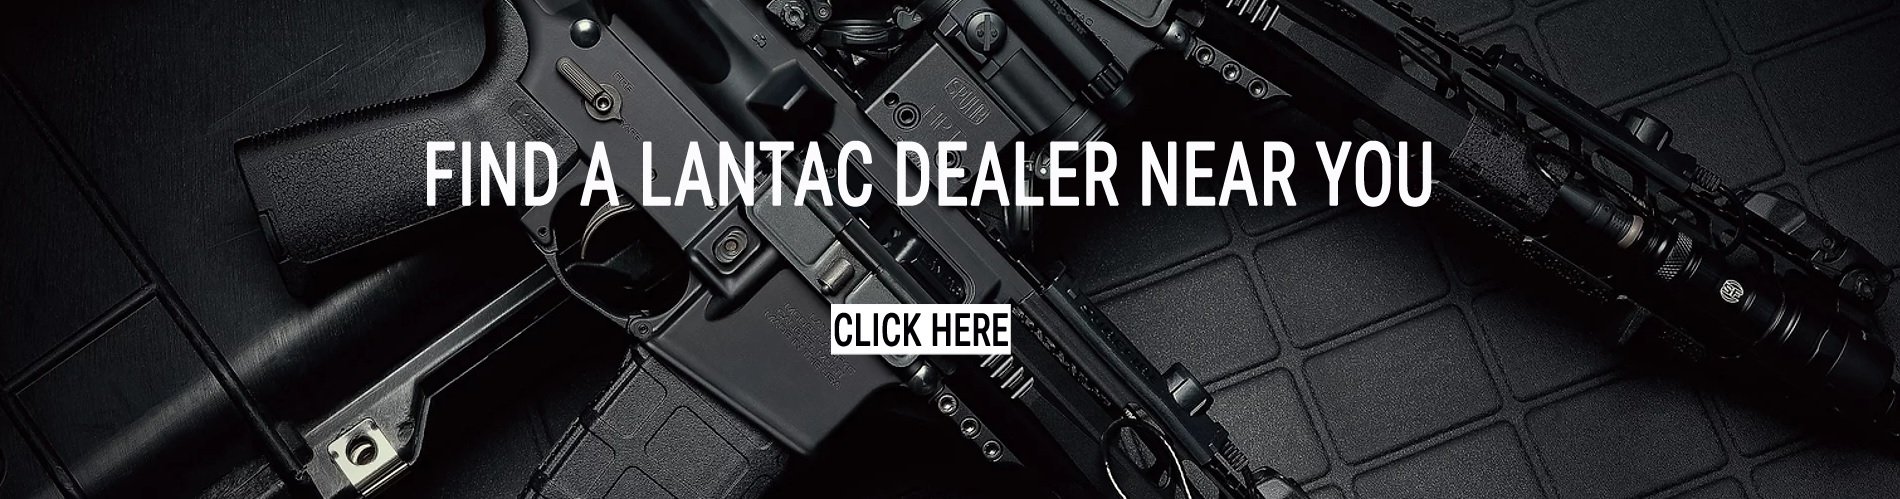 LANTAC-dealer-banner